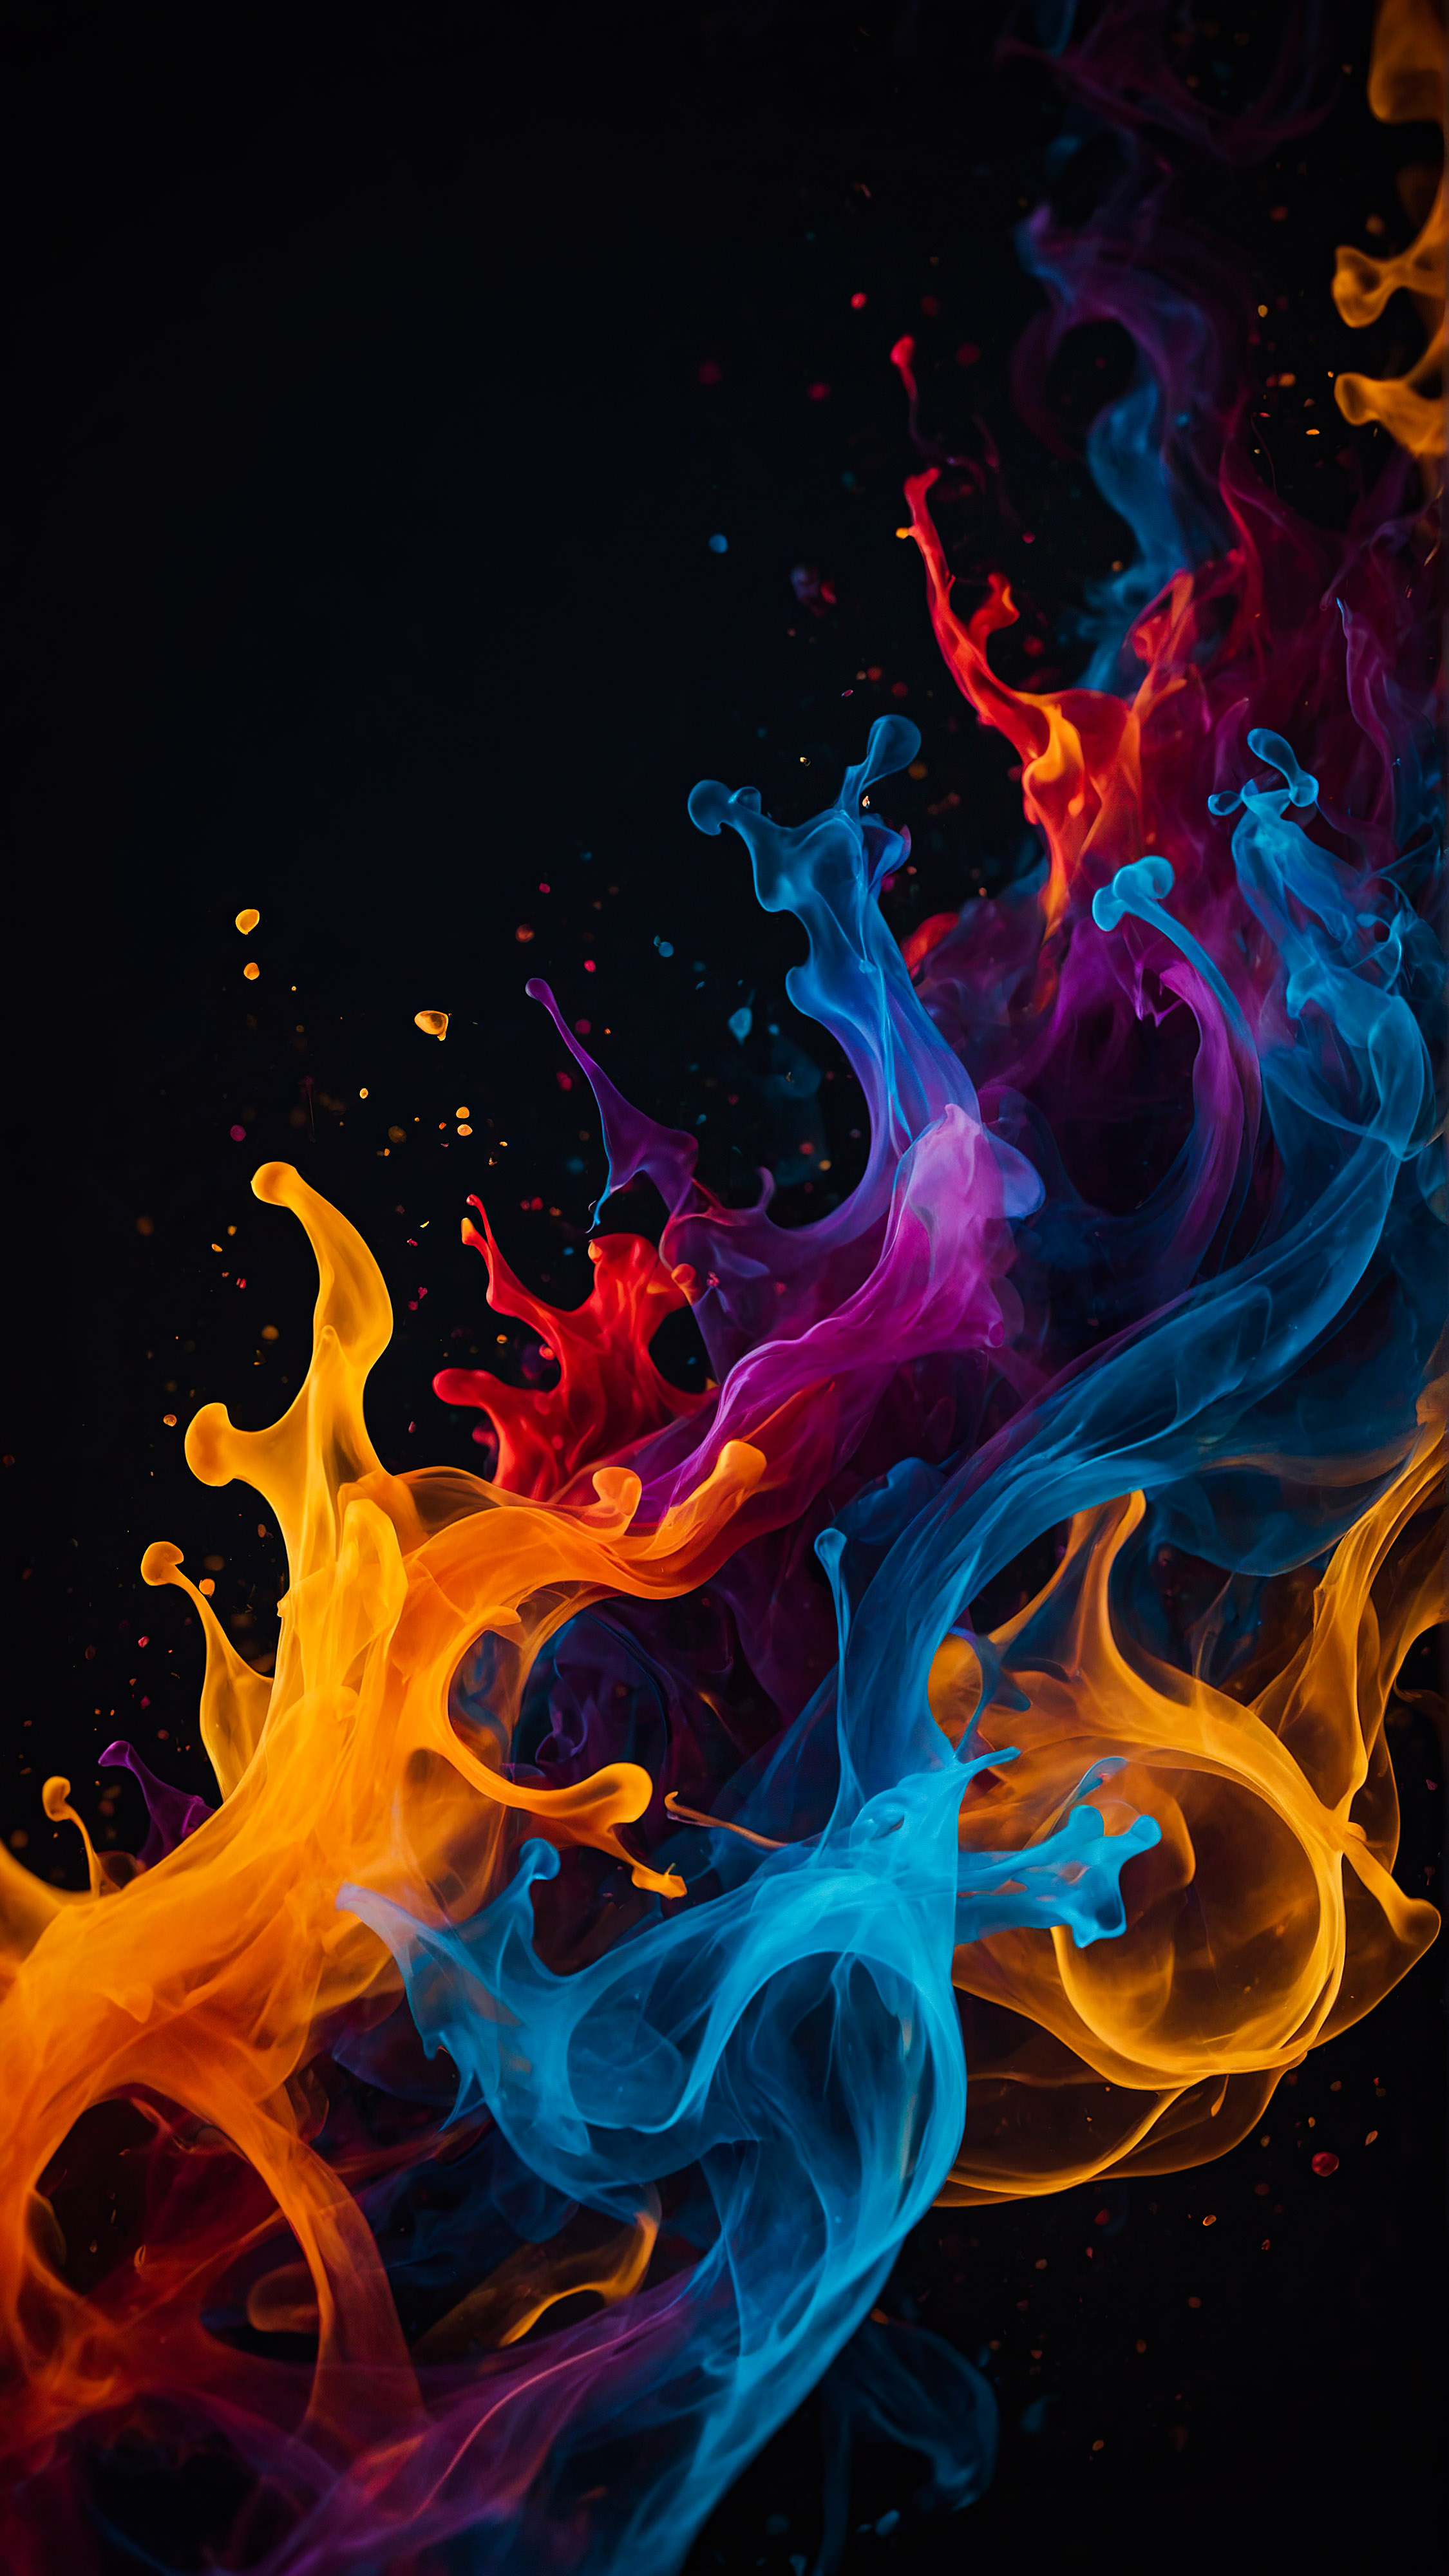 Obtenez un sens du mouvement et de l'énergie avec notre fond d'écran iPhone noir en 4K, présentant des formes abstraites entrelacées qui ressemblent à des flammes colorées sur un arrière-plan sombre. 